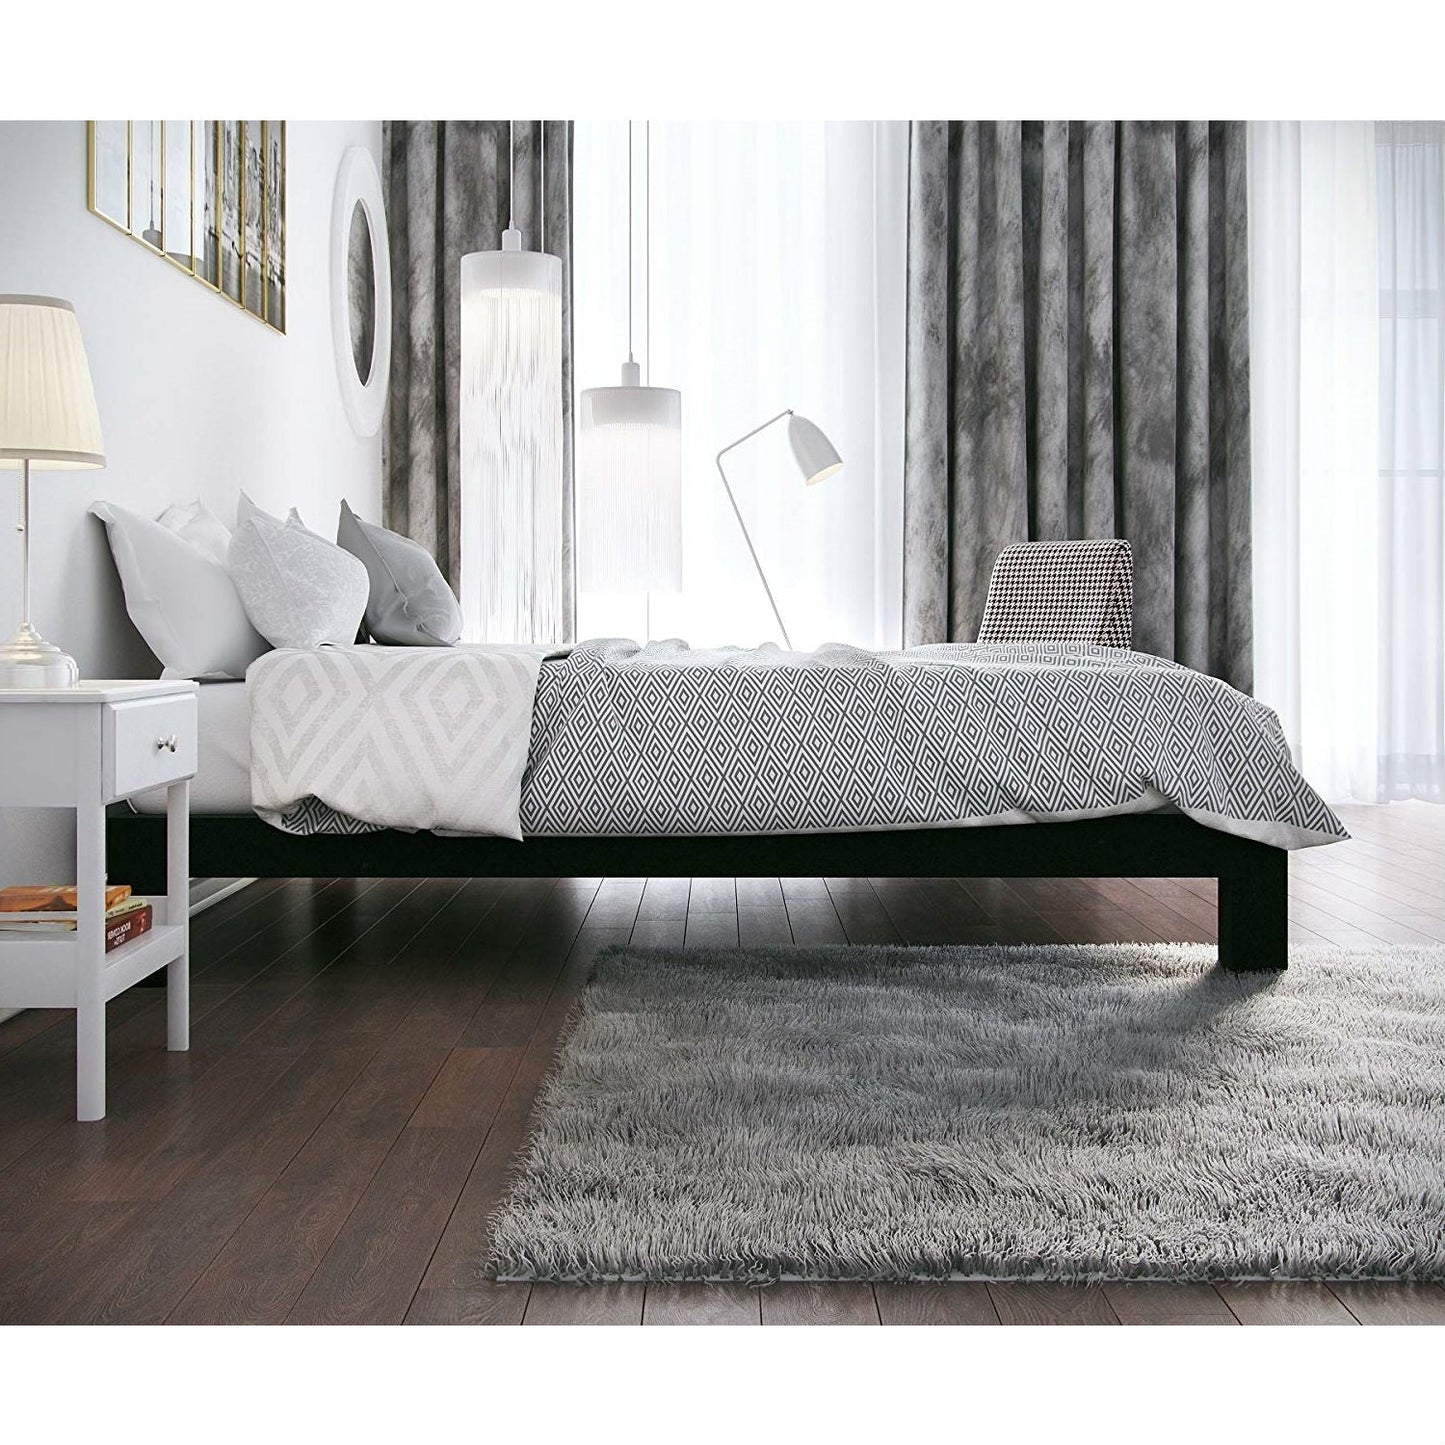 Bedroom > Bed Frames > Platform Beds - Full Modern Black Metal Platform Bed Frame With Wood Slats